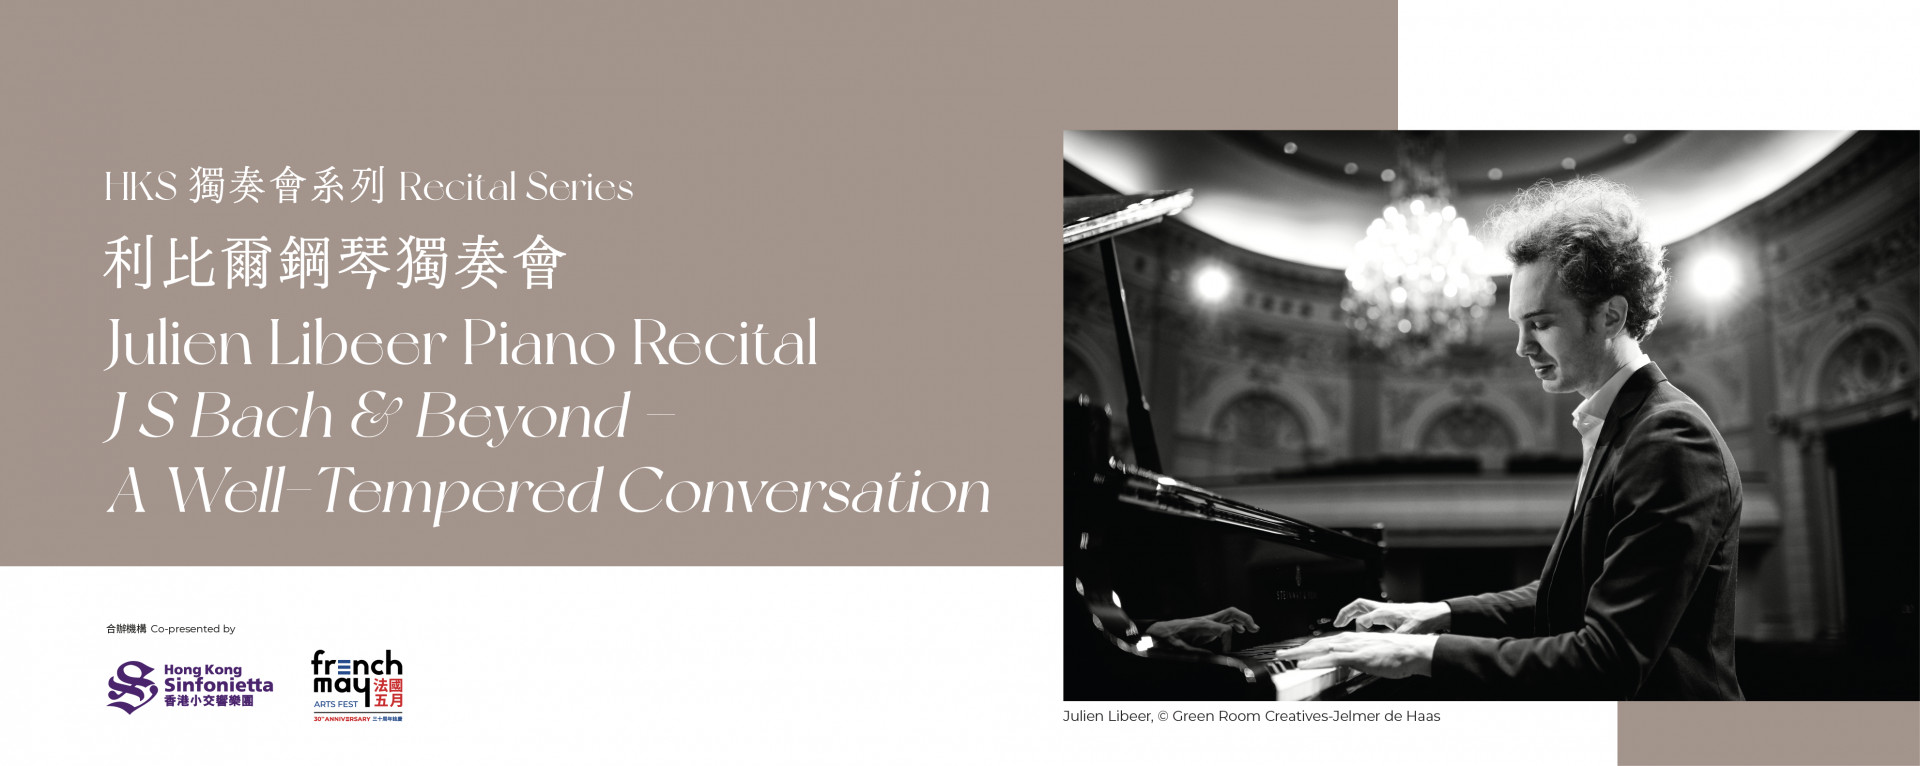 HKS Recital Series Julien Libeer Piano Recital J S Bach & Beyond – A Well-Tempered Conversation